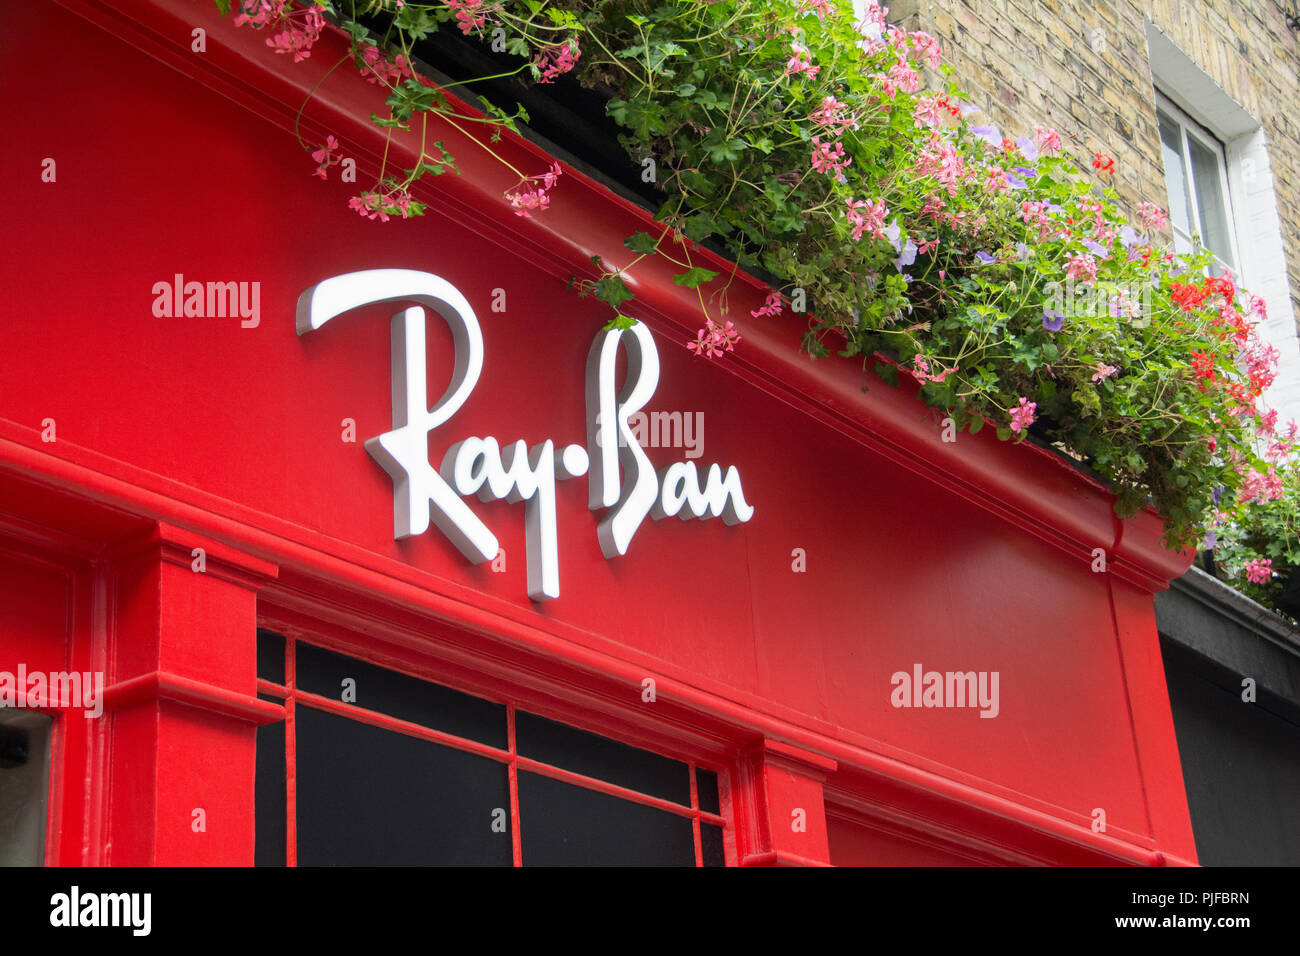 ray ban store london